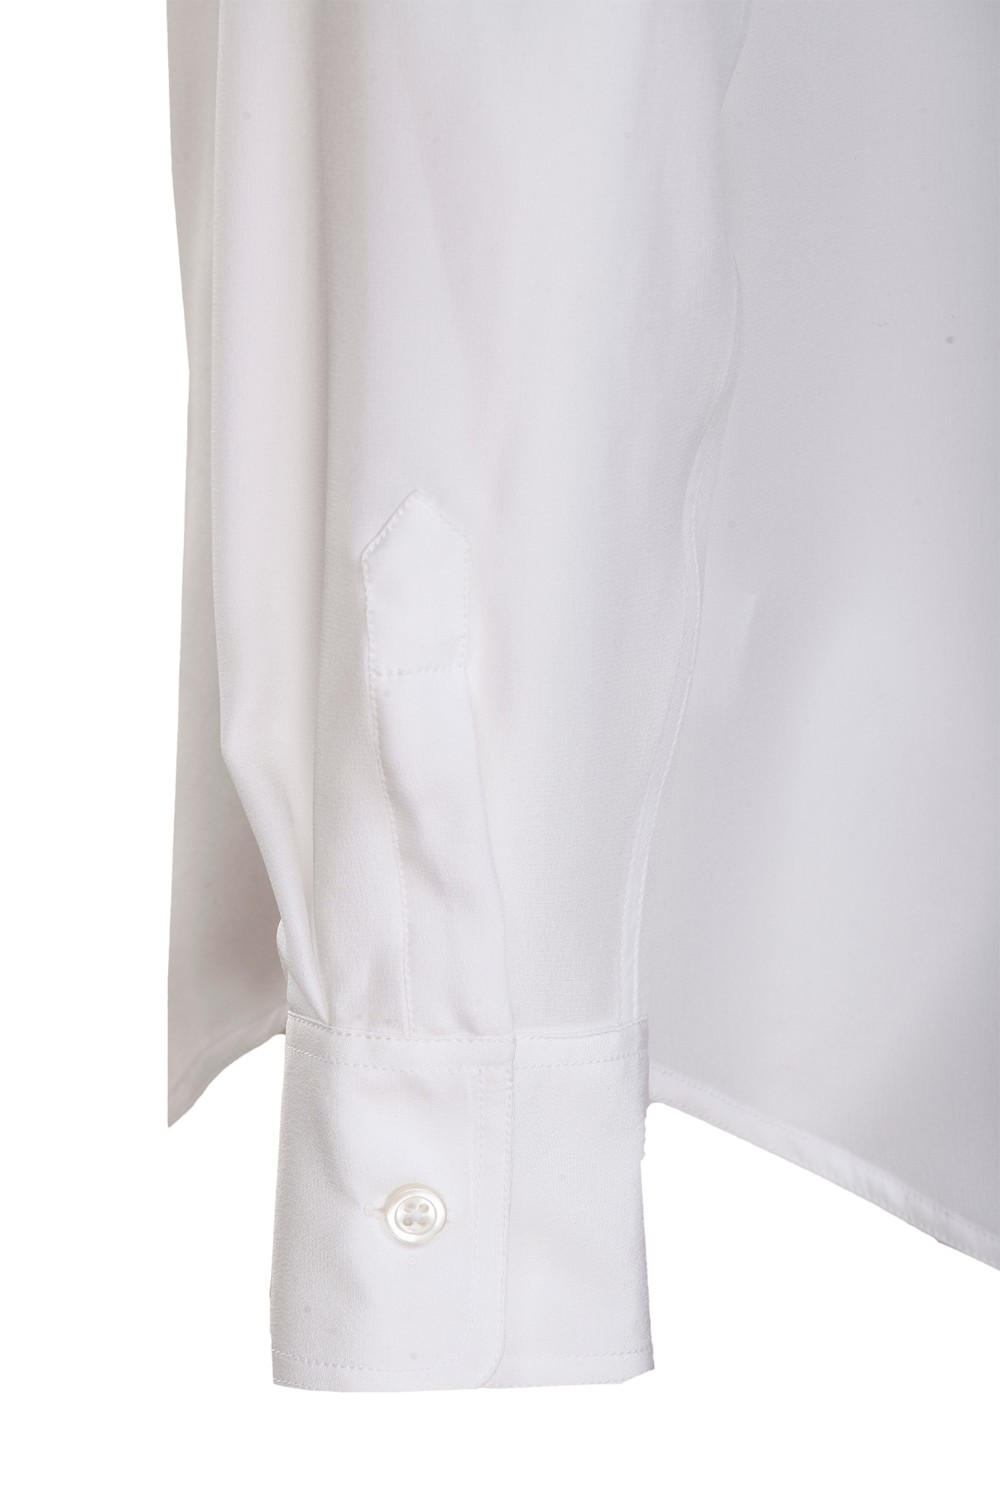 shop BAGUTTA Saldi Camicia: Bagutta camicia bianca.
Colletto a punta.
Maniche lunghe.
Due tasche sul petto.
Vestibilità regolare.
Composizione: 100% viscosa.
Fabbricato in Albania.. MIAS 10415-001 number 3190728